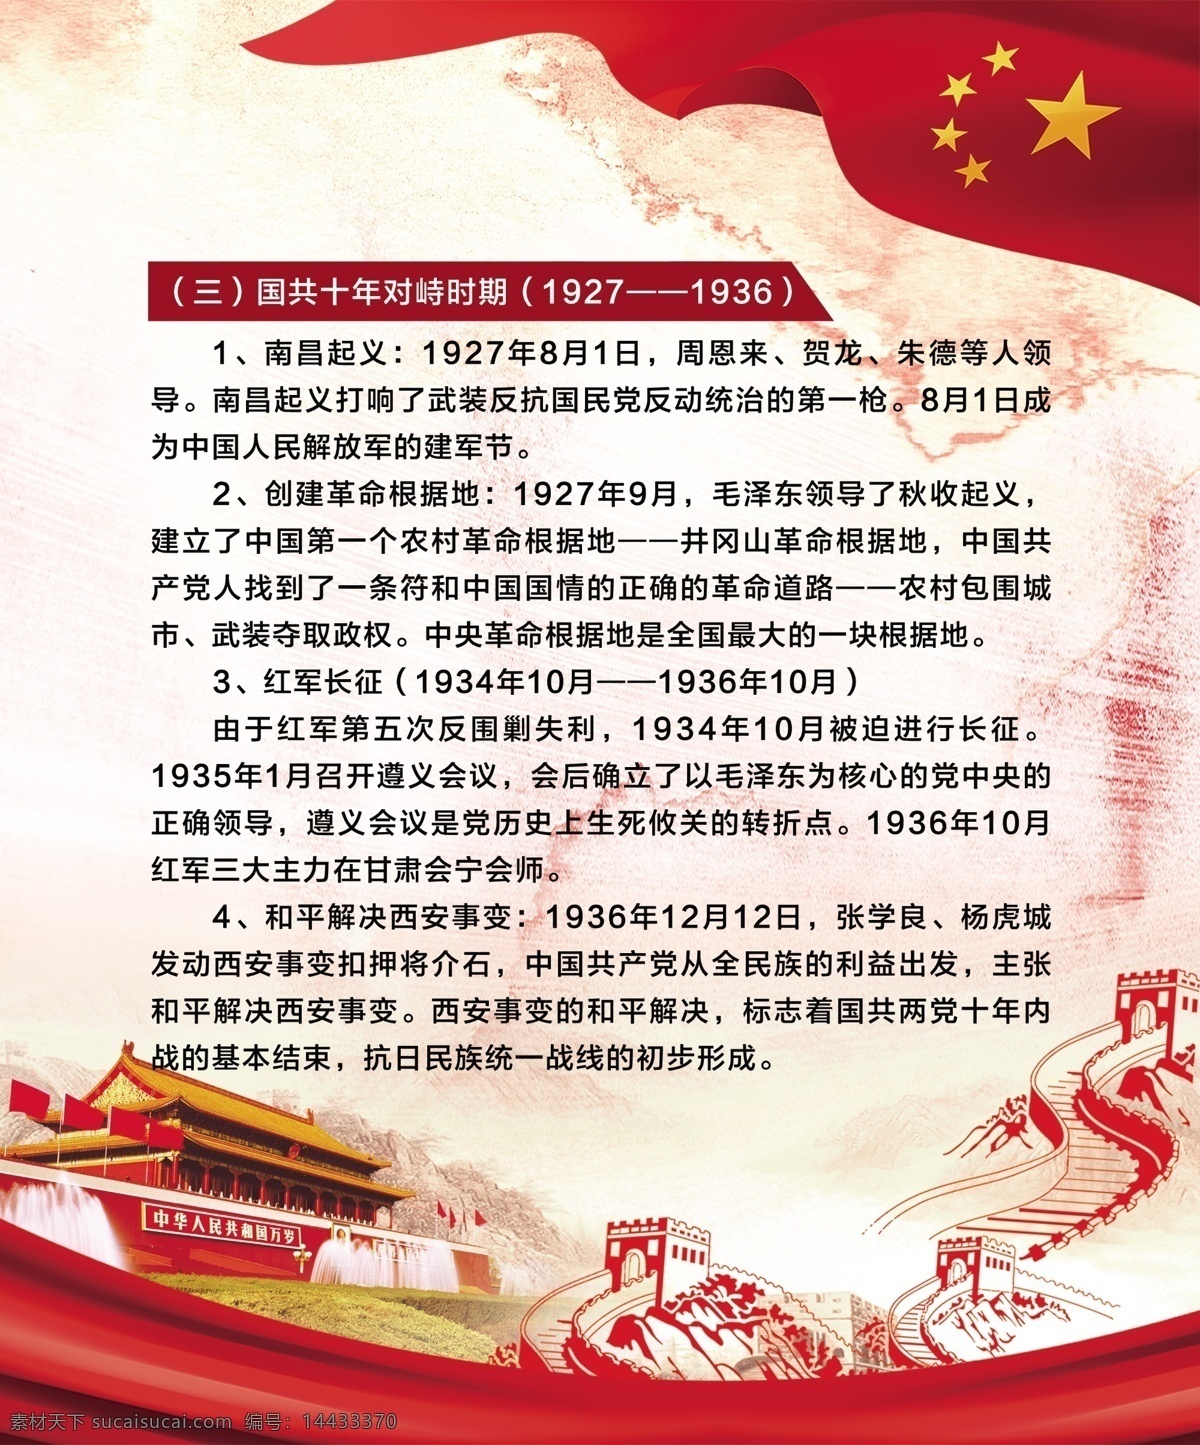 光辉历程 党建 国共对峙 南昌起义 红军长征 西安事变 分层